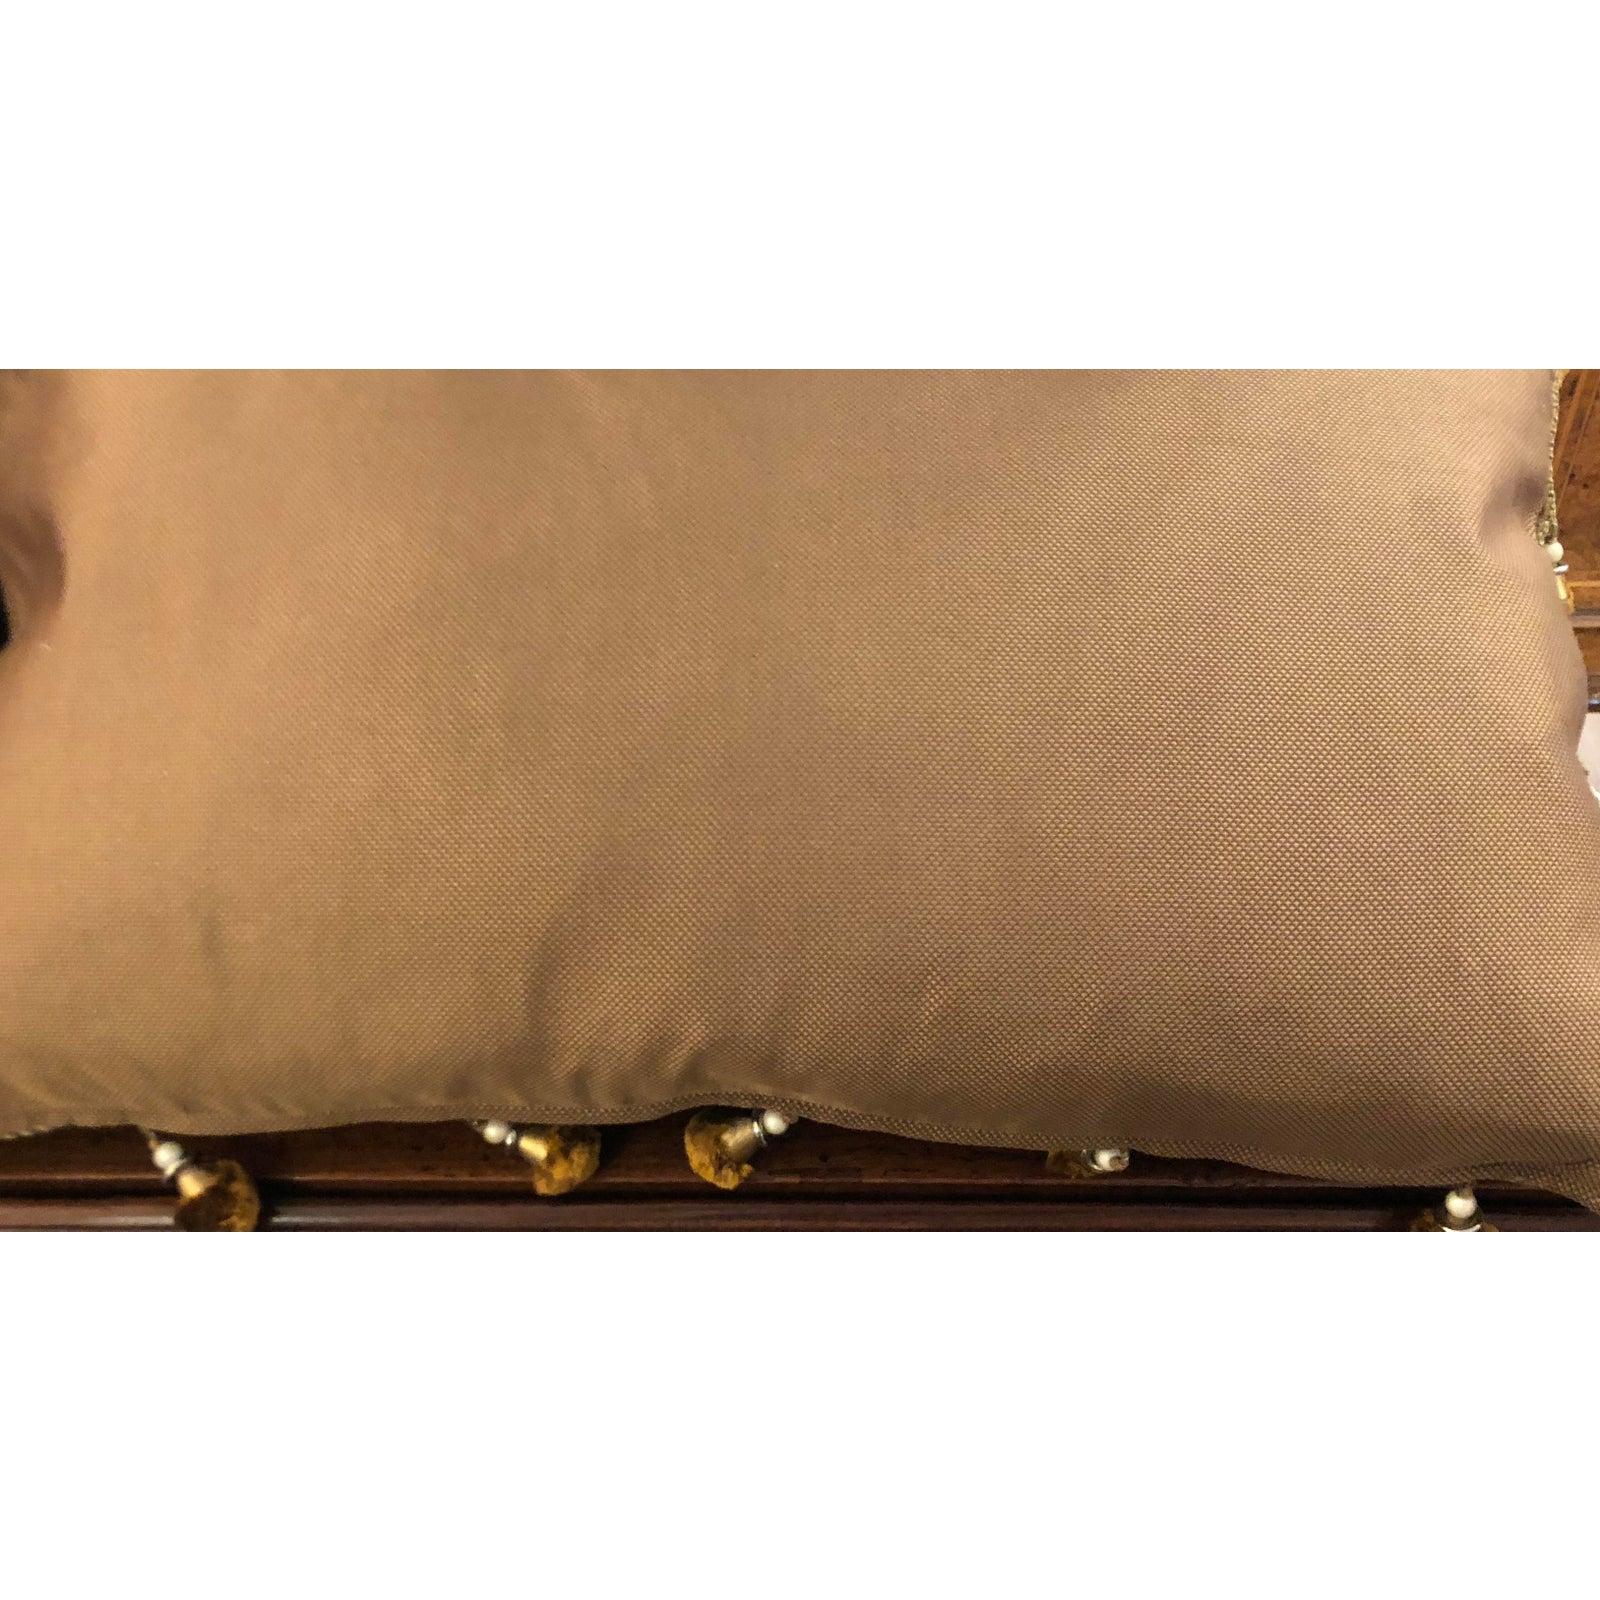 Renaissance Pair of Authentic Fortuny Pillows with Decor De Paris Trim